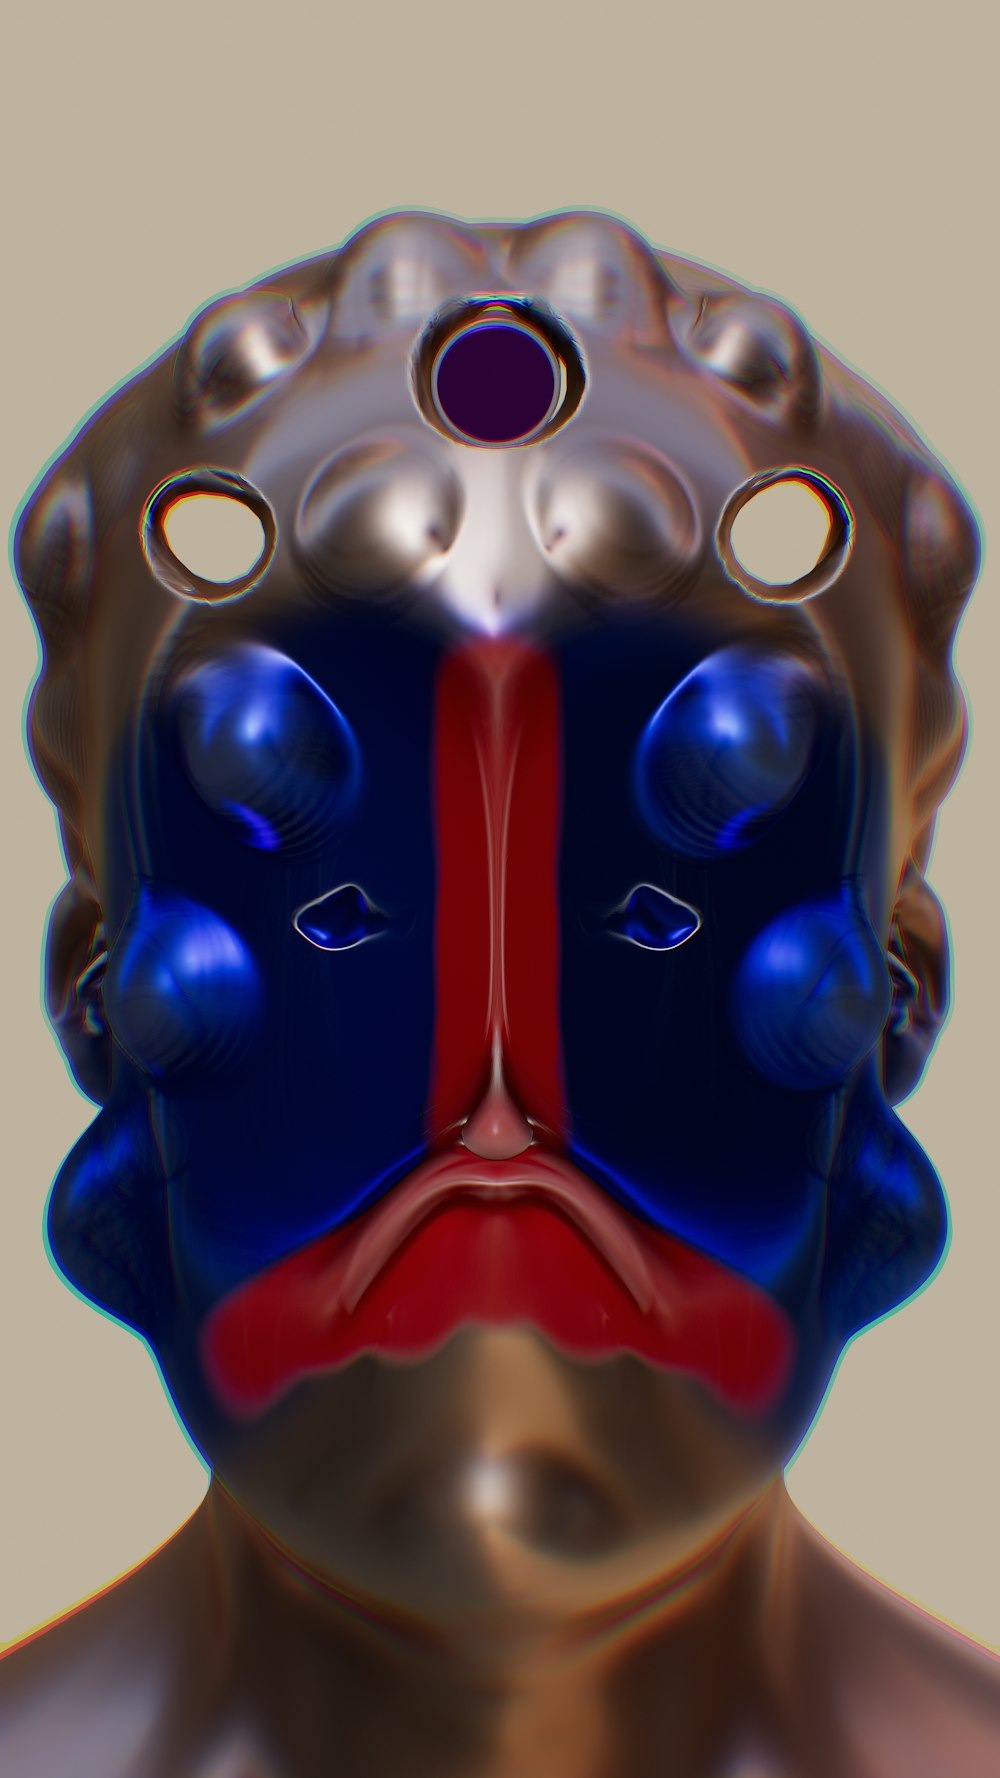 파란색과 빨간색 마스크를 쓴 남자 얼굴의 3D 이미지